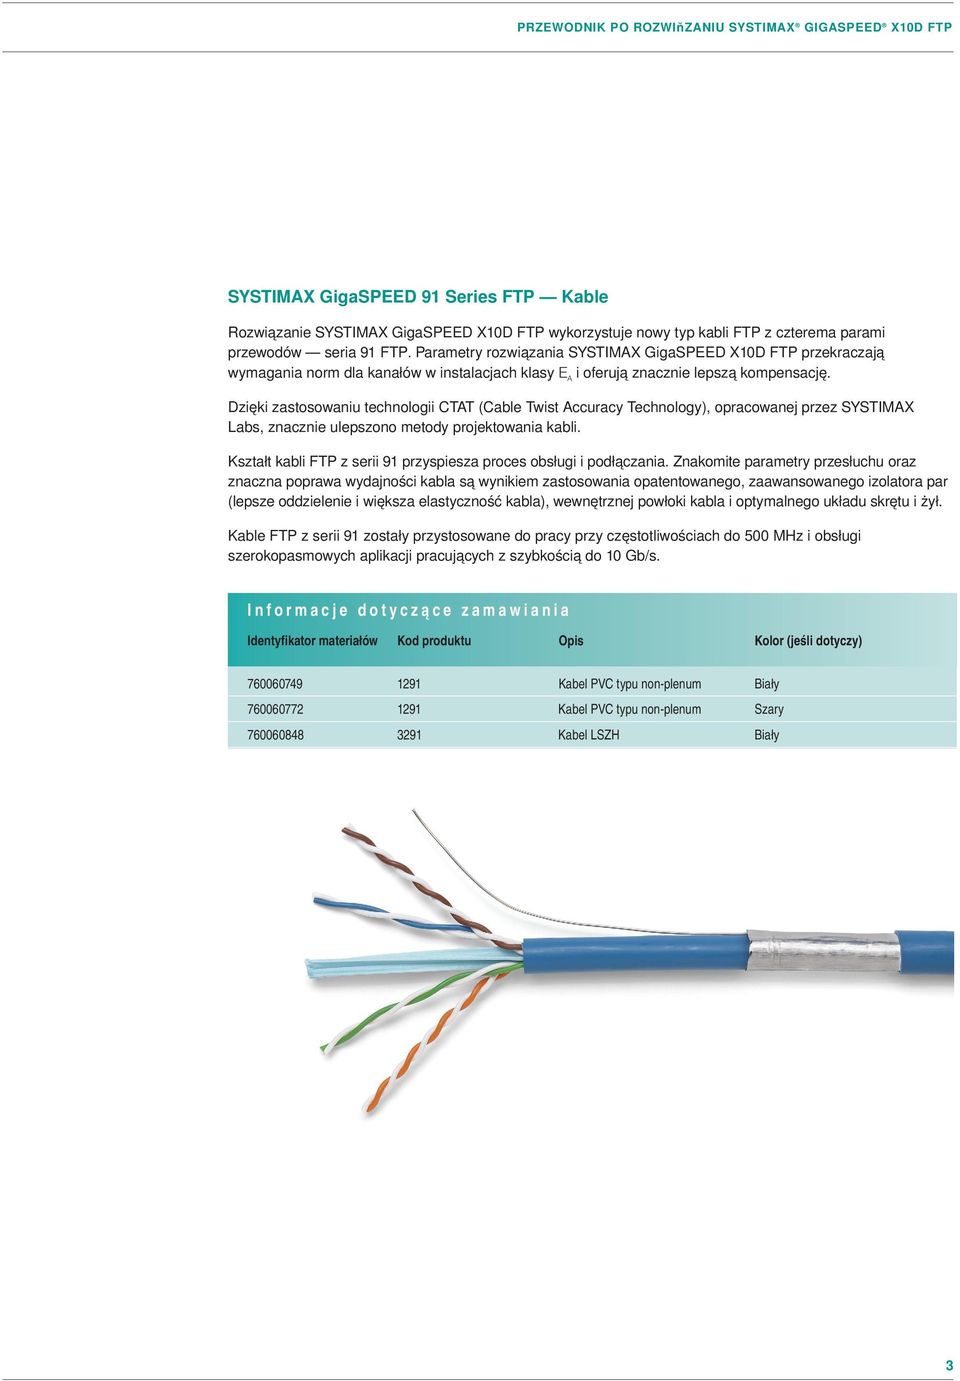 Dzięki zastosowaniu technologii CTAT (Cable Twist Accuracy Technology), opracowanej przez SYSTIMAX Labs, znacznie ulepszono metody projektowania kabli.